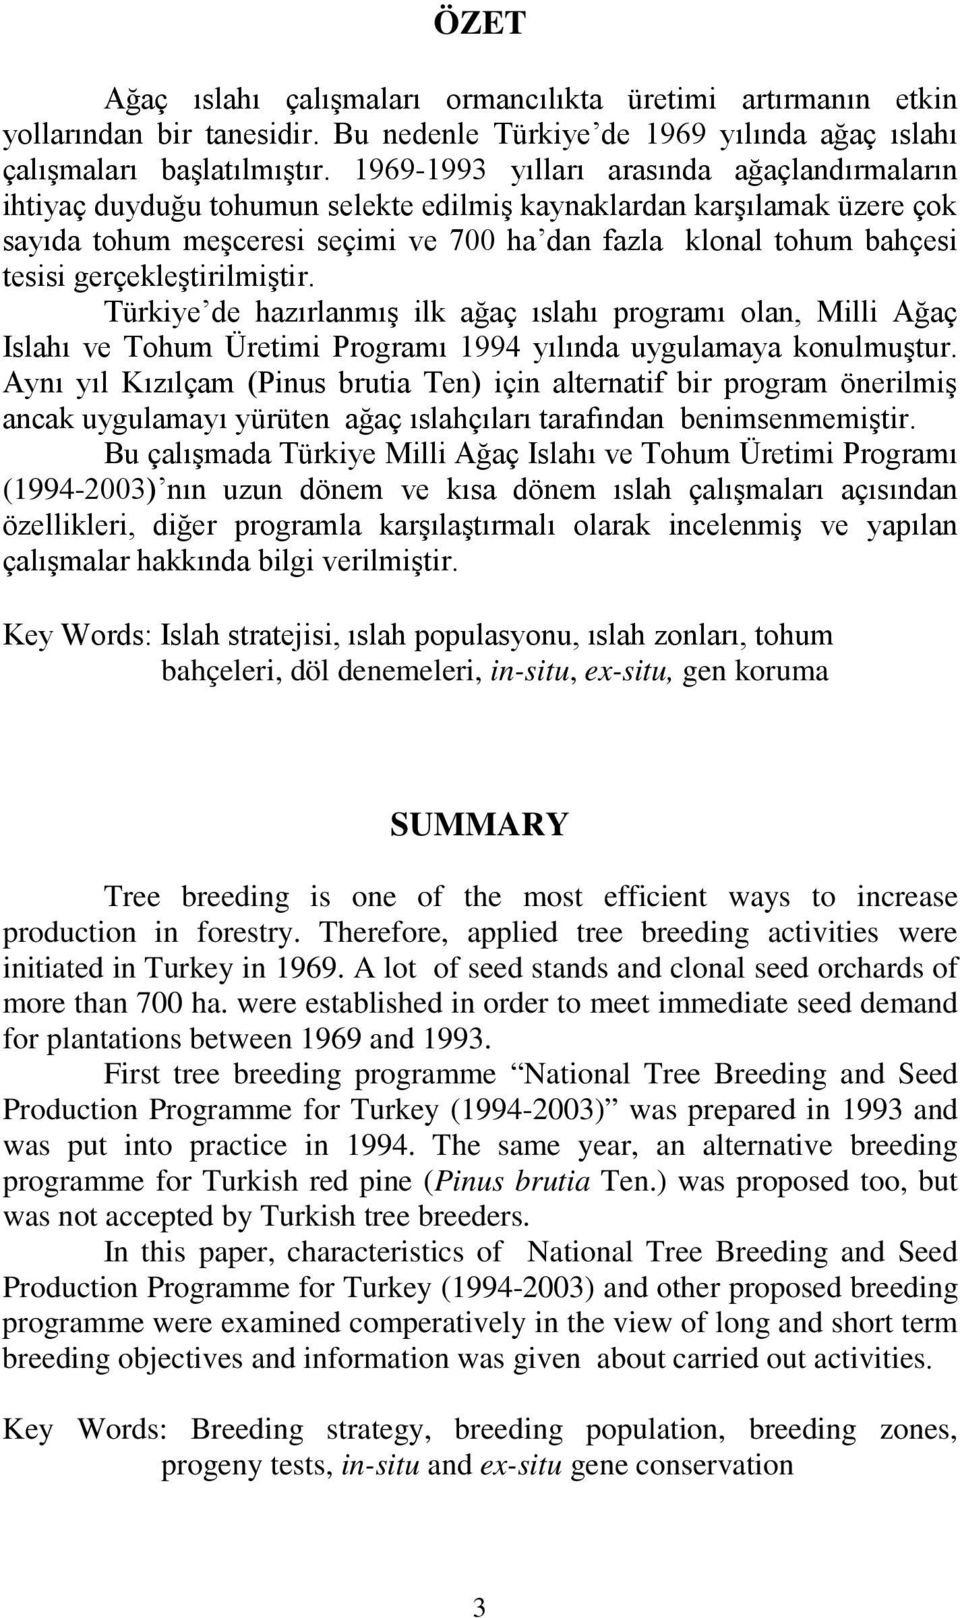 gerçekleştirilmiştir. Türkiye de hazırlanmış ilk ağaç ıslahı programı olan, Milli Ağaç Islahı ve Tohum Üretimi Programı 1994 yılında uygulamaya konulmuştur.